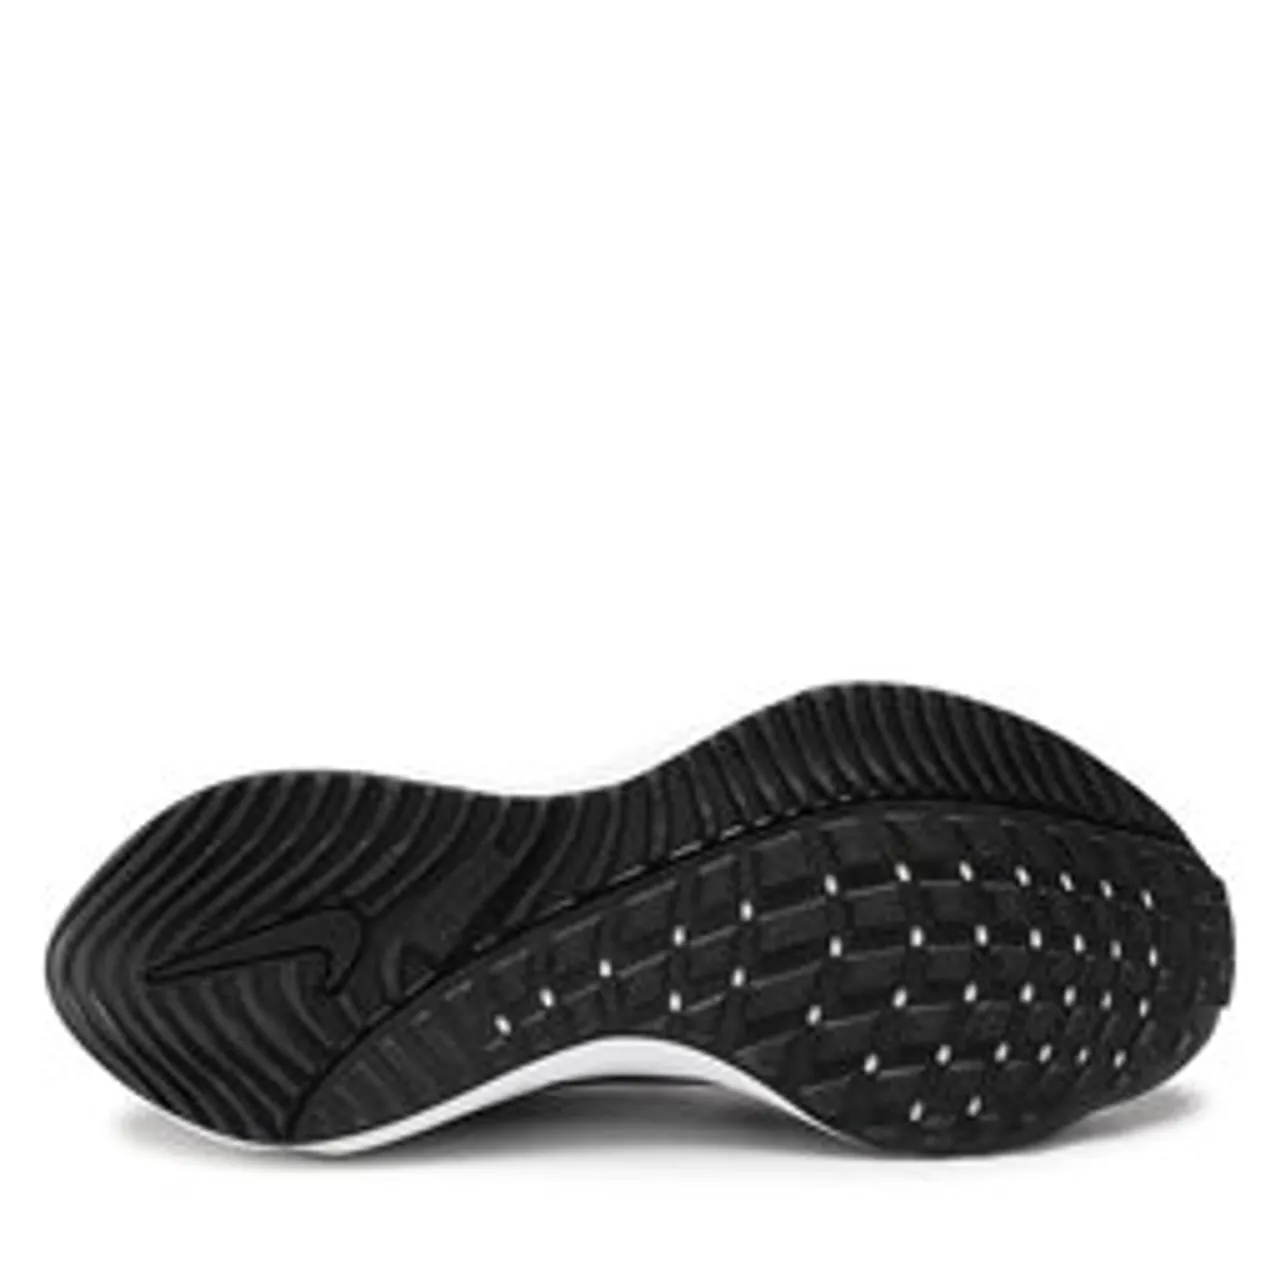 Schuhe Nike Air Zoom Vomero 16 DA7245 001 Black/White/Anthracite